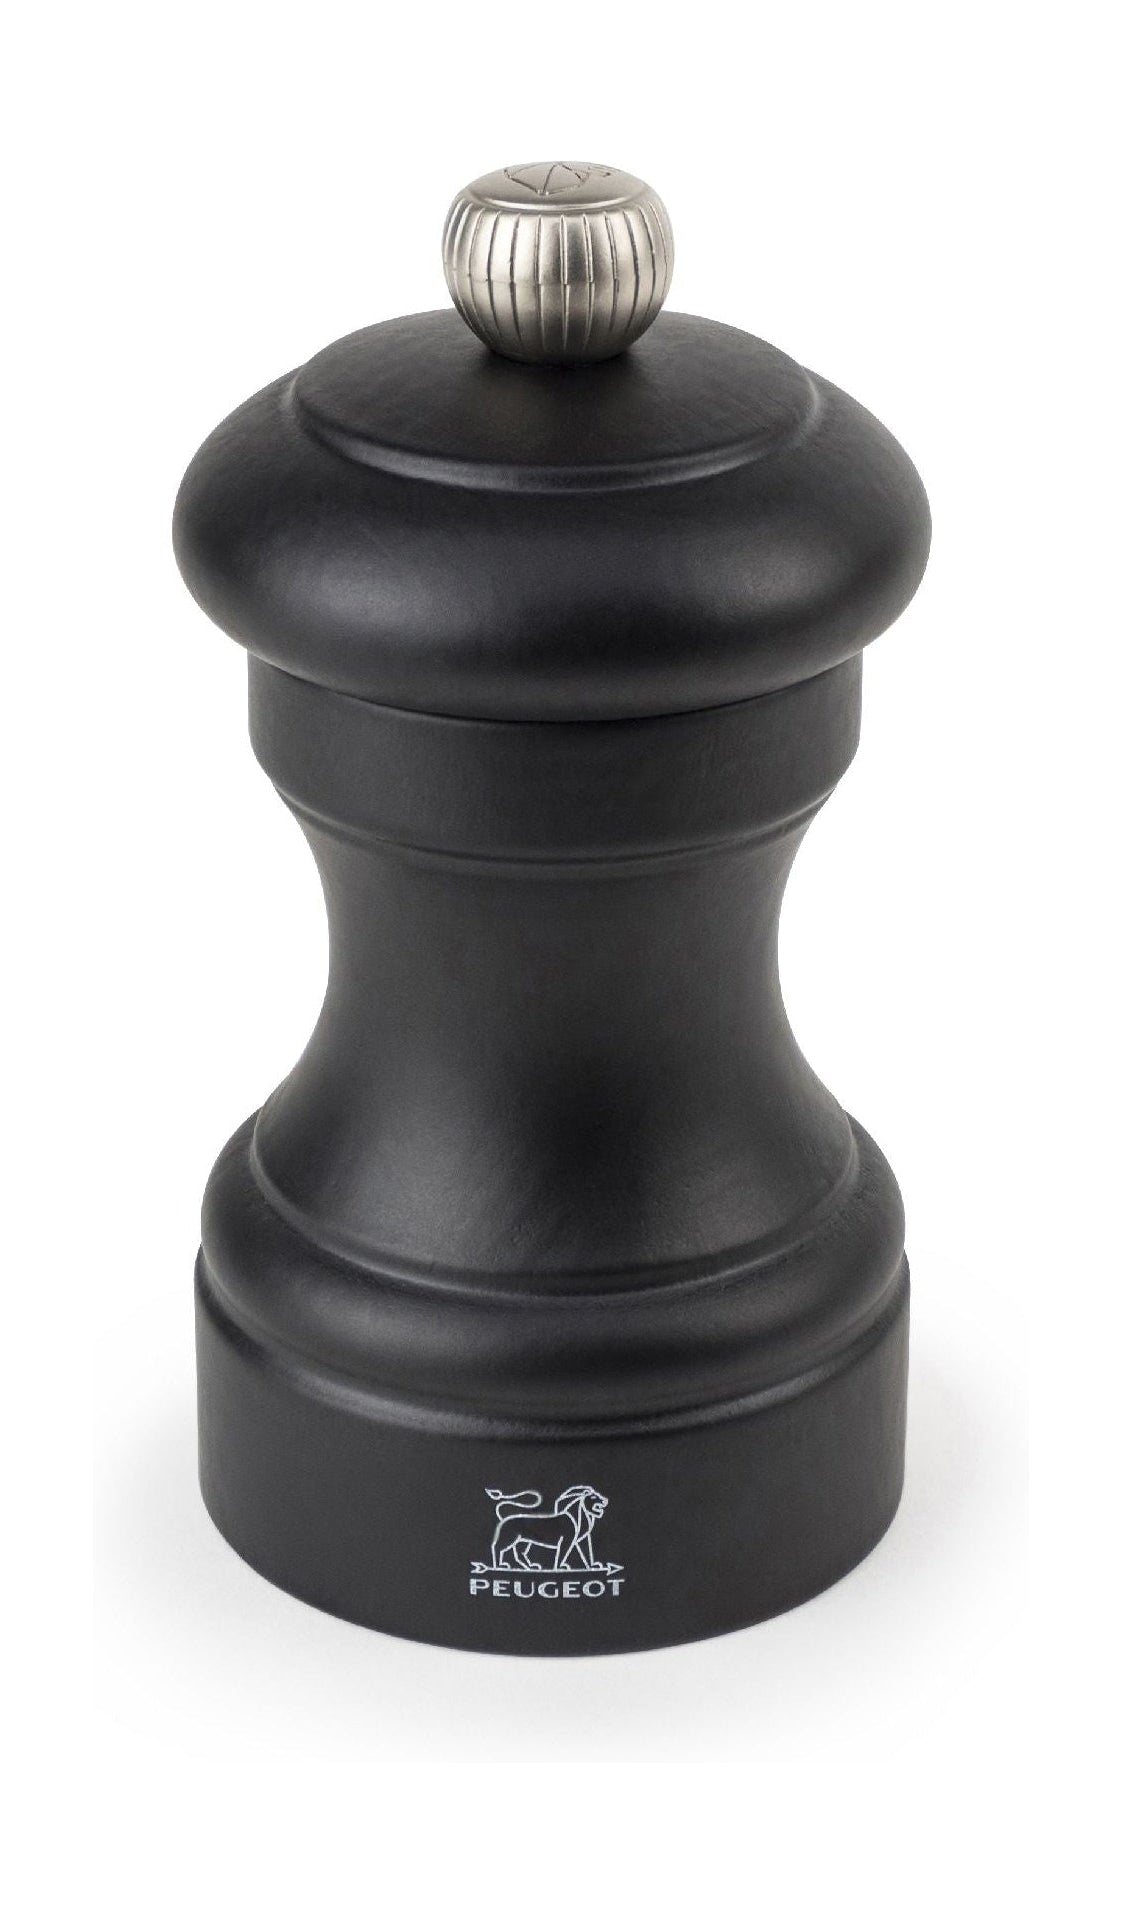 Peugeot Bistro Salt Mill Black, 10 cm